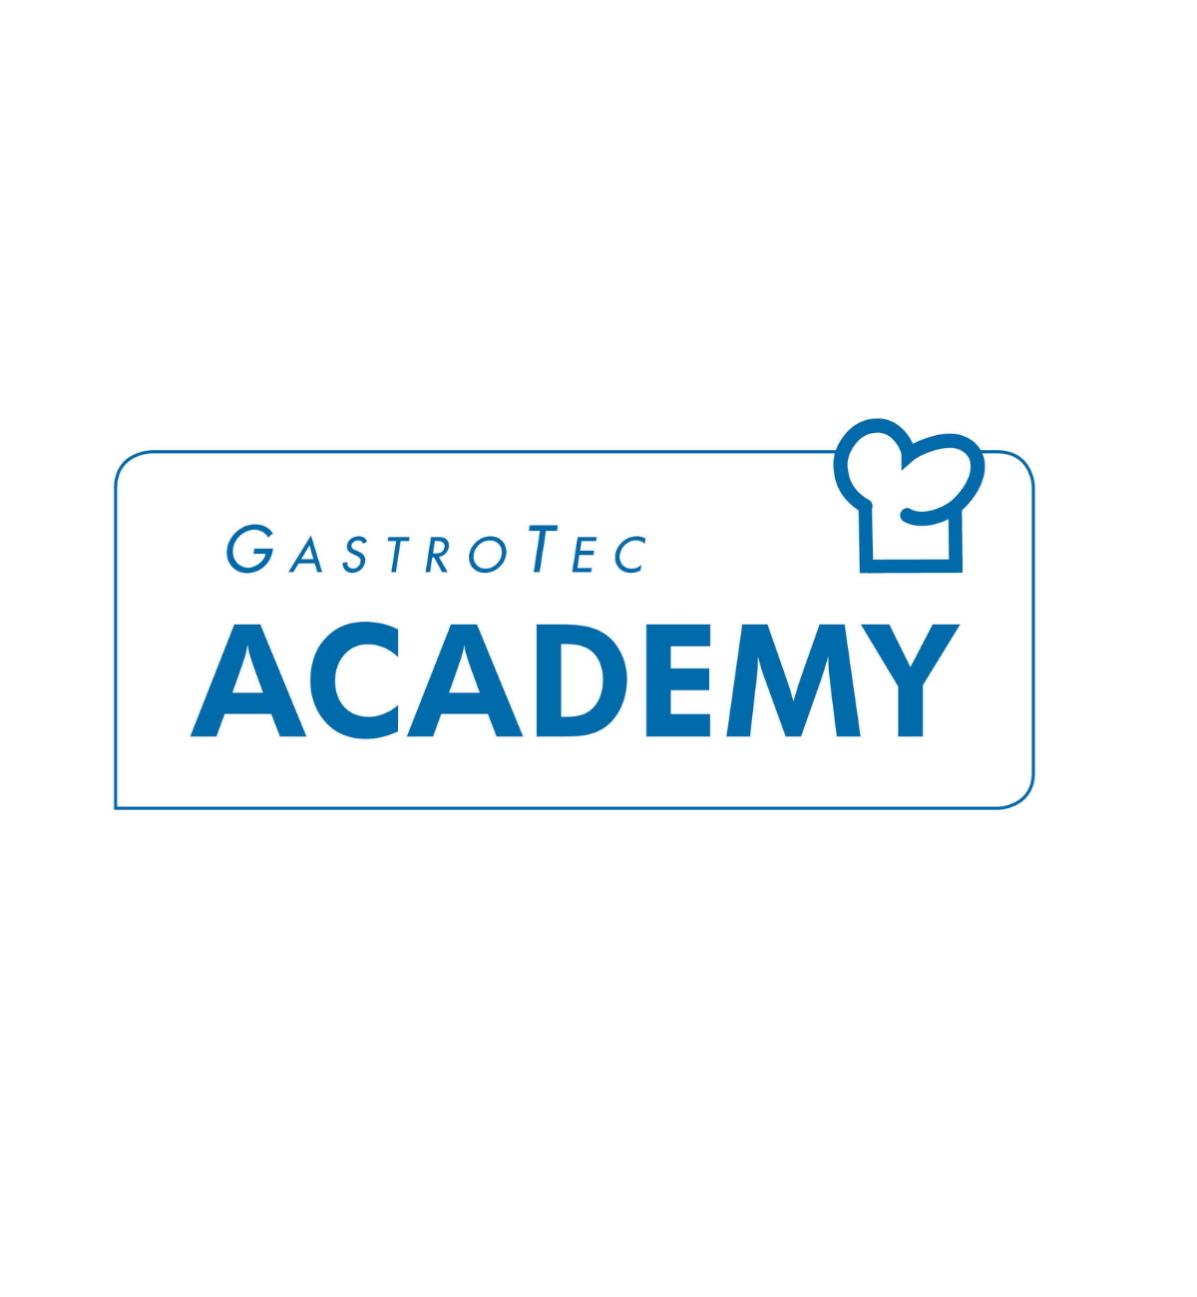 Gastrotec Academy